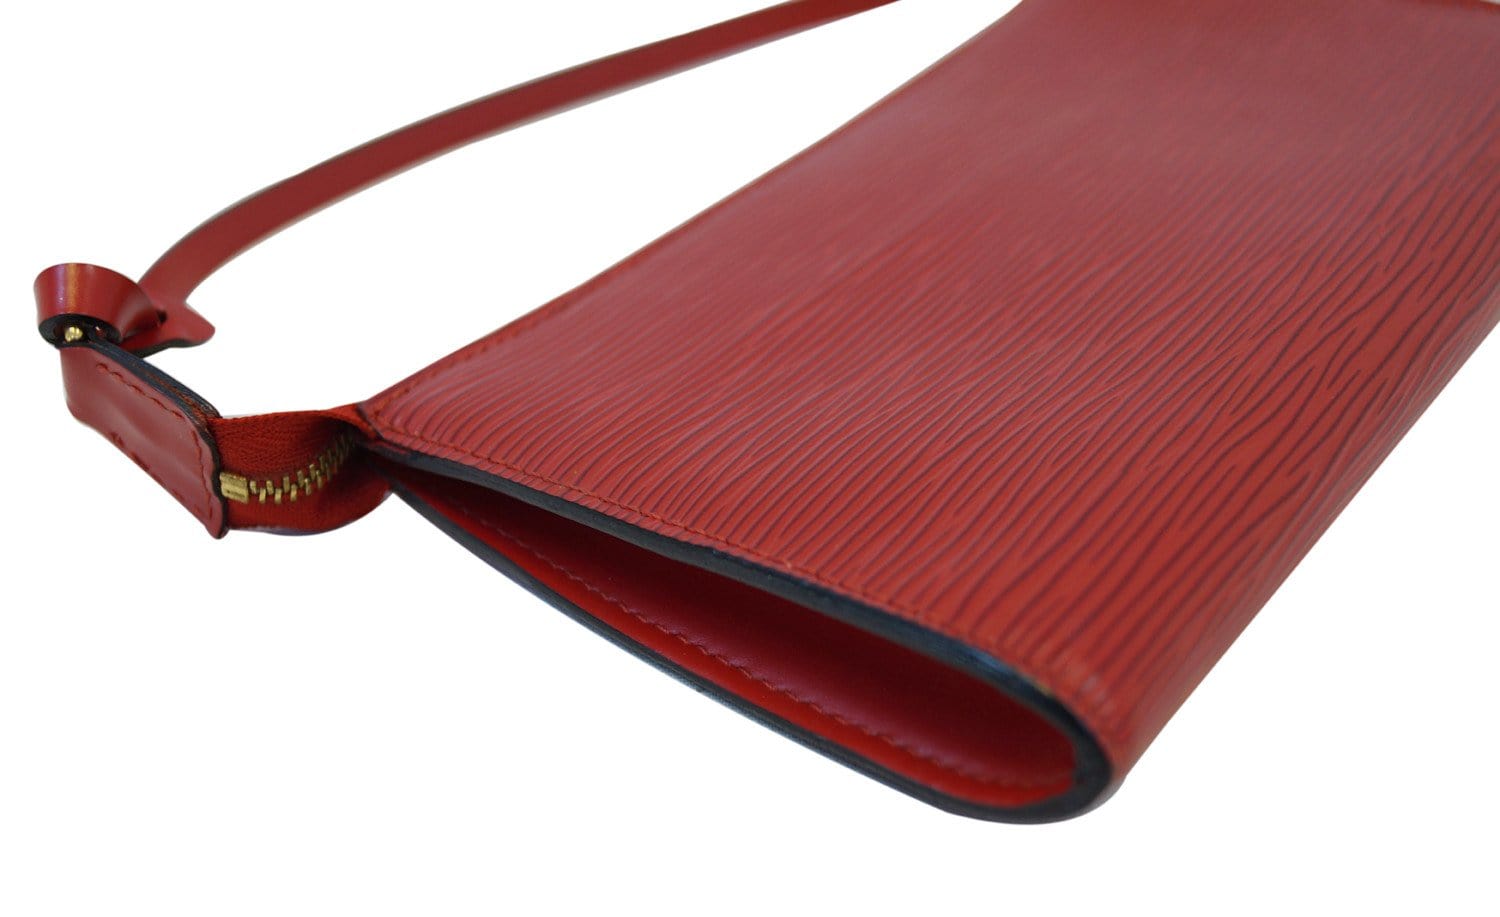 LOUIS VUITTON Epi Leather Red Pochette Accessoires Pouch